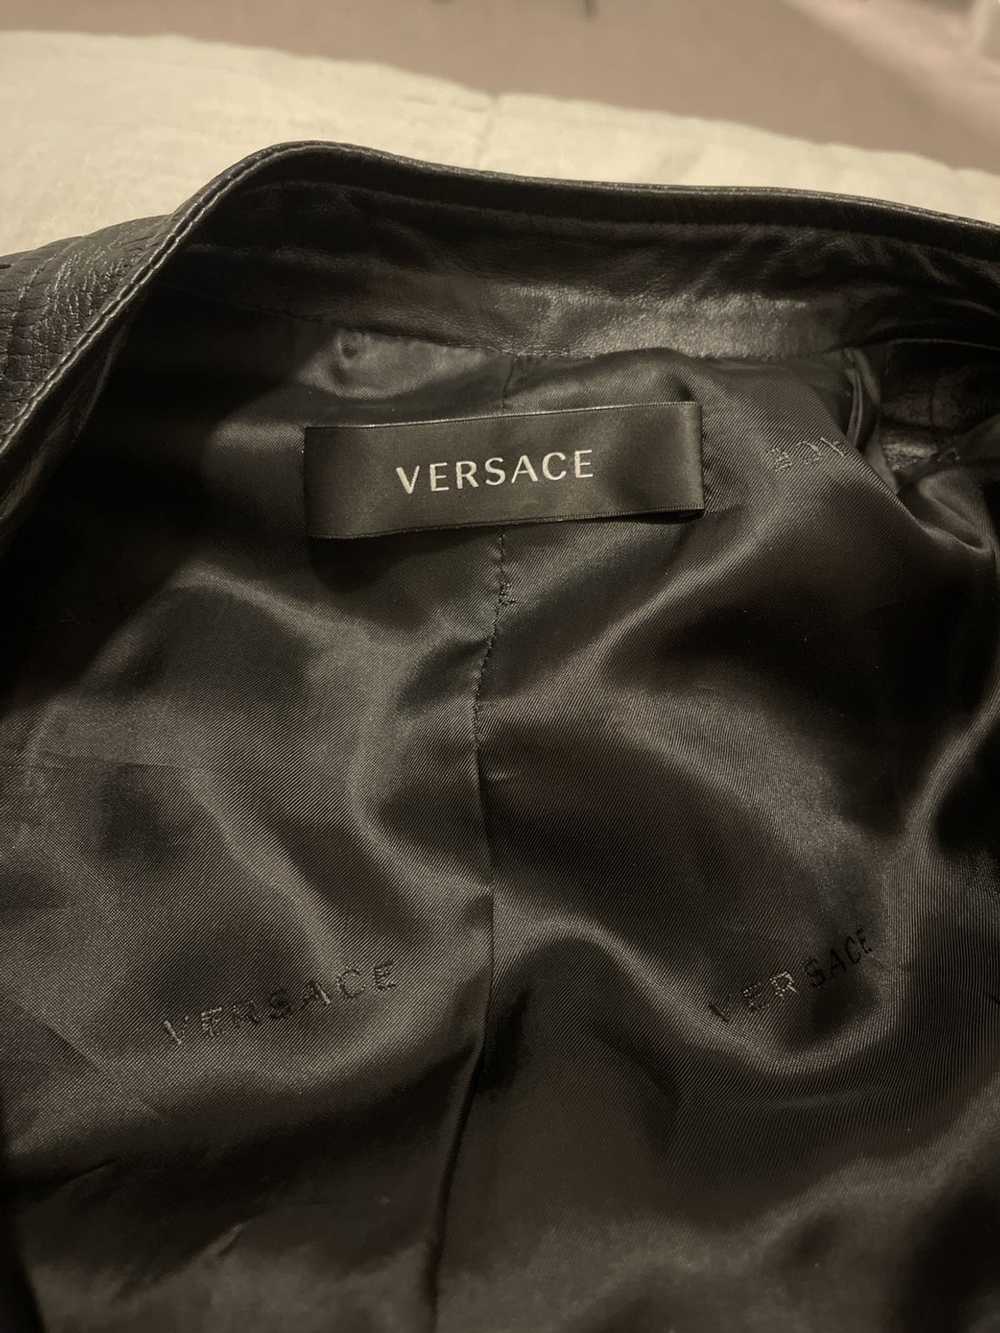 Versace Versace Jacket - image 6